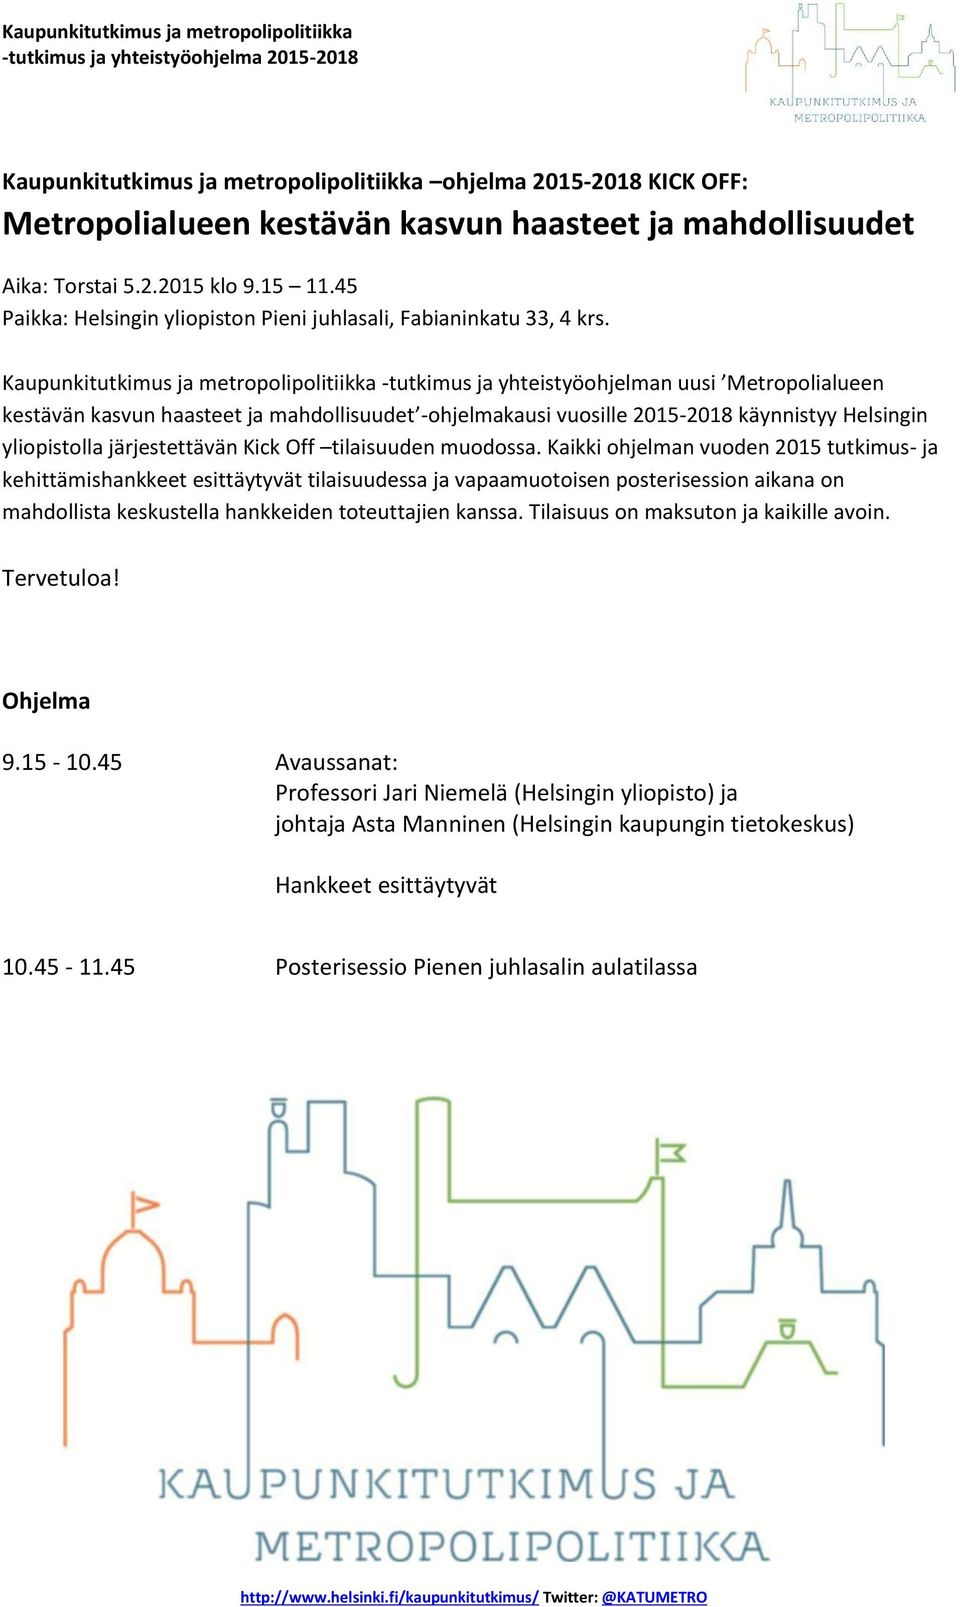 Kaupunkitutkimus ja metropolipolitiikka -tutkimus ja yhteistyöohjelman uusi Metropolialueen kestävän kasvun haasteet ja mahdollisuudet -ohjelmakausi vuosille 2015-2018 käynnistyy Helsingin